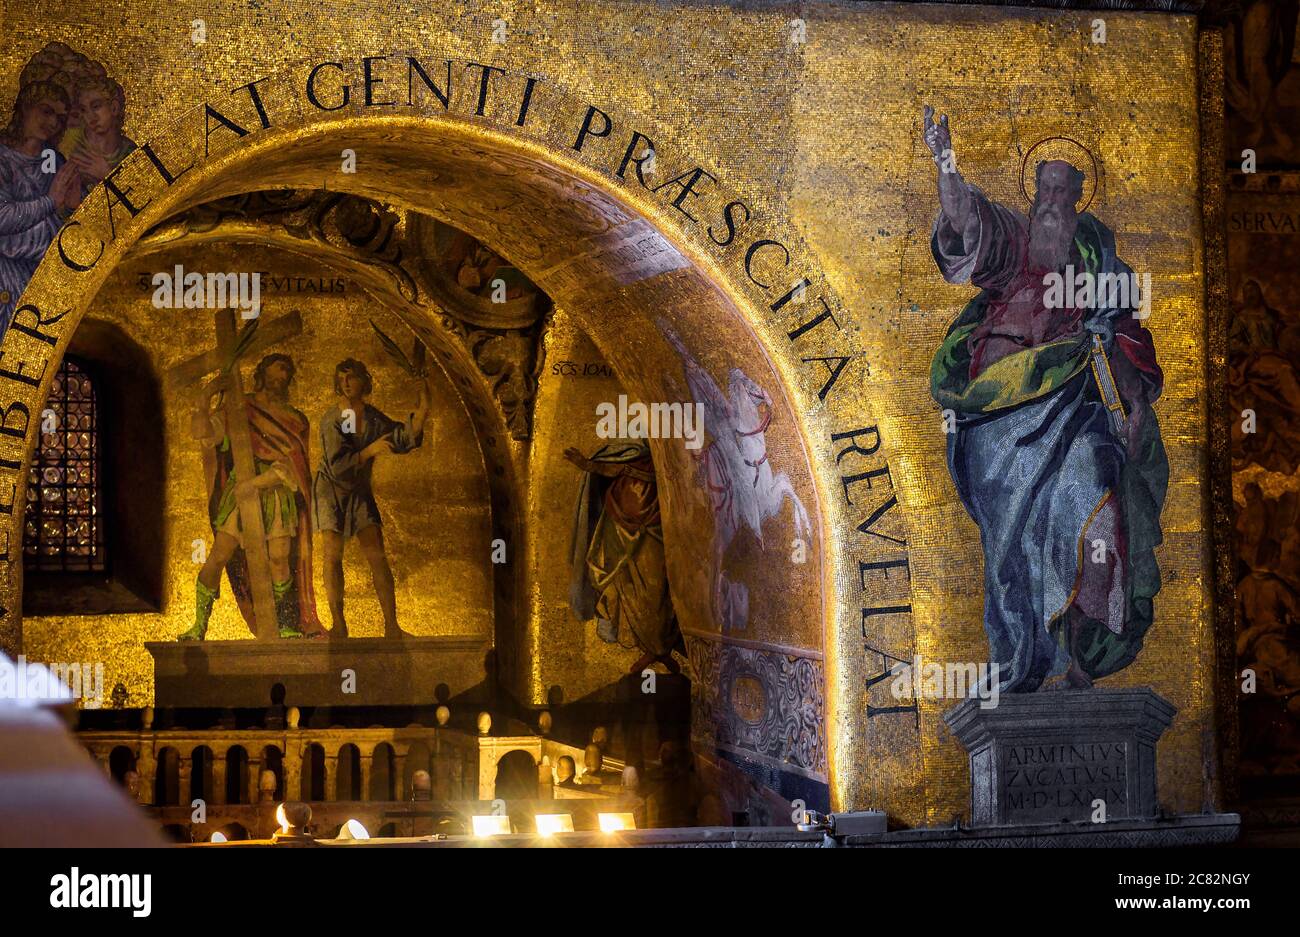 Venedig, Italien - 21. Mai 2017: Goldenes Wandmosaik im Inneren des Markusdom oder Markusbasilika,`s ist ein großes altes Wahrzeichen der Stadt. Innenraum des berühmten Markusdom` Stockfoto